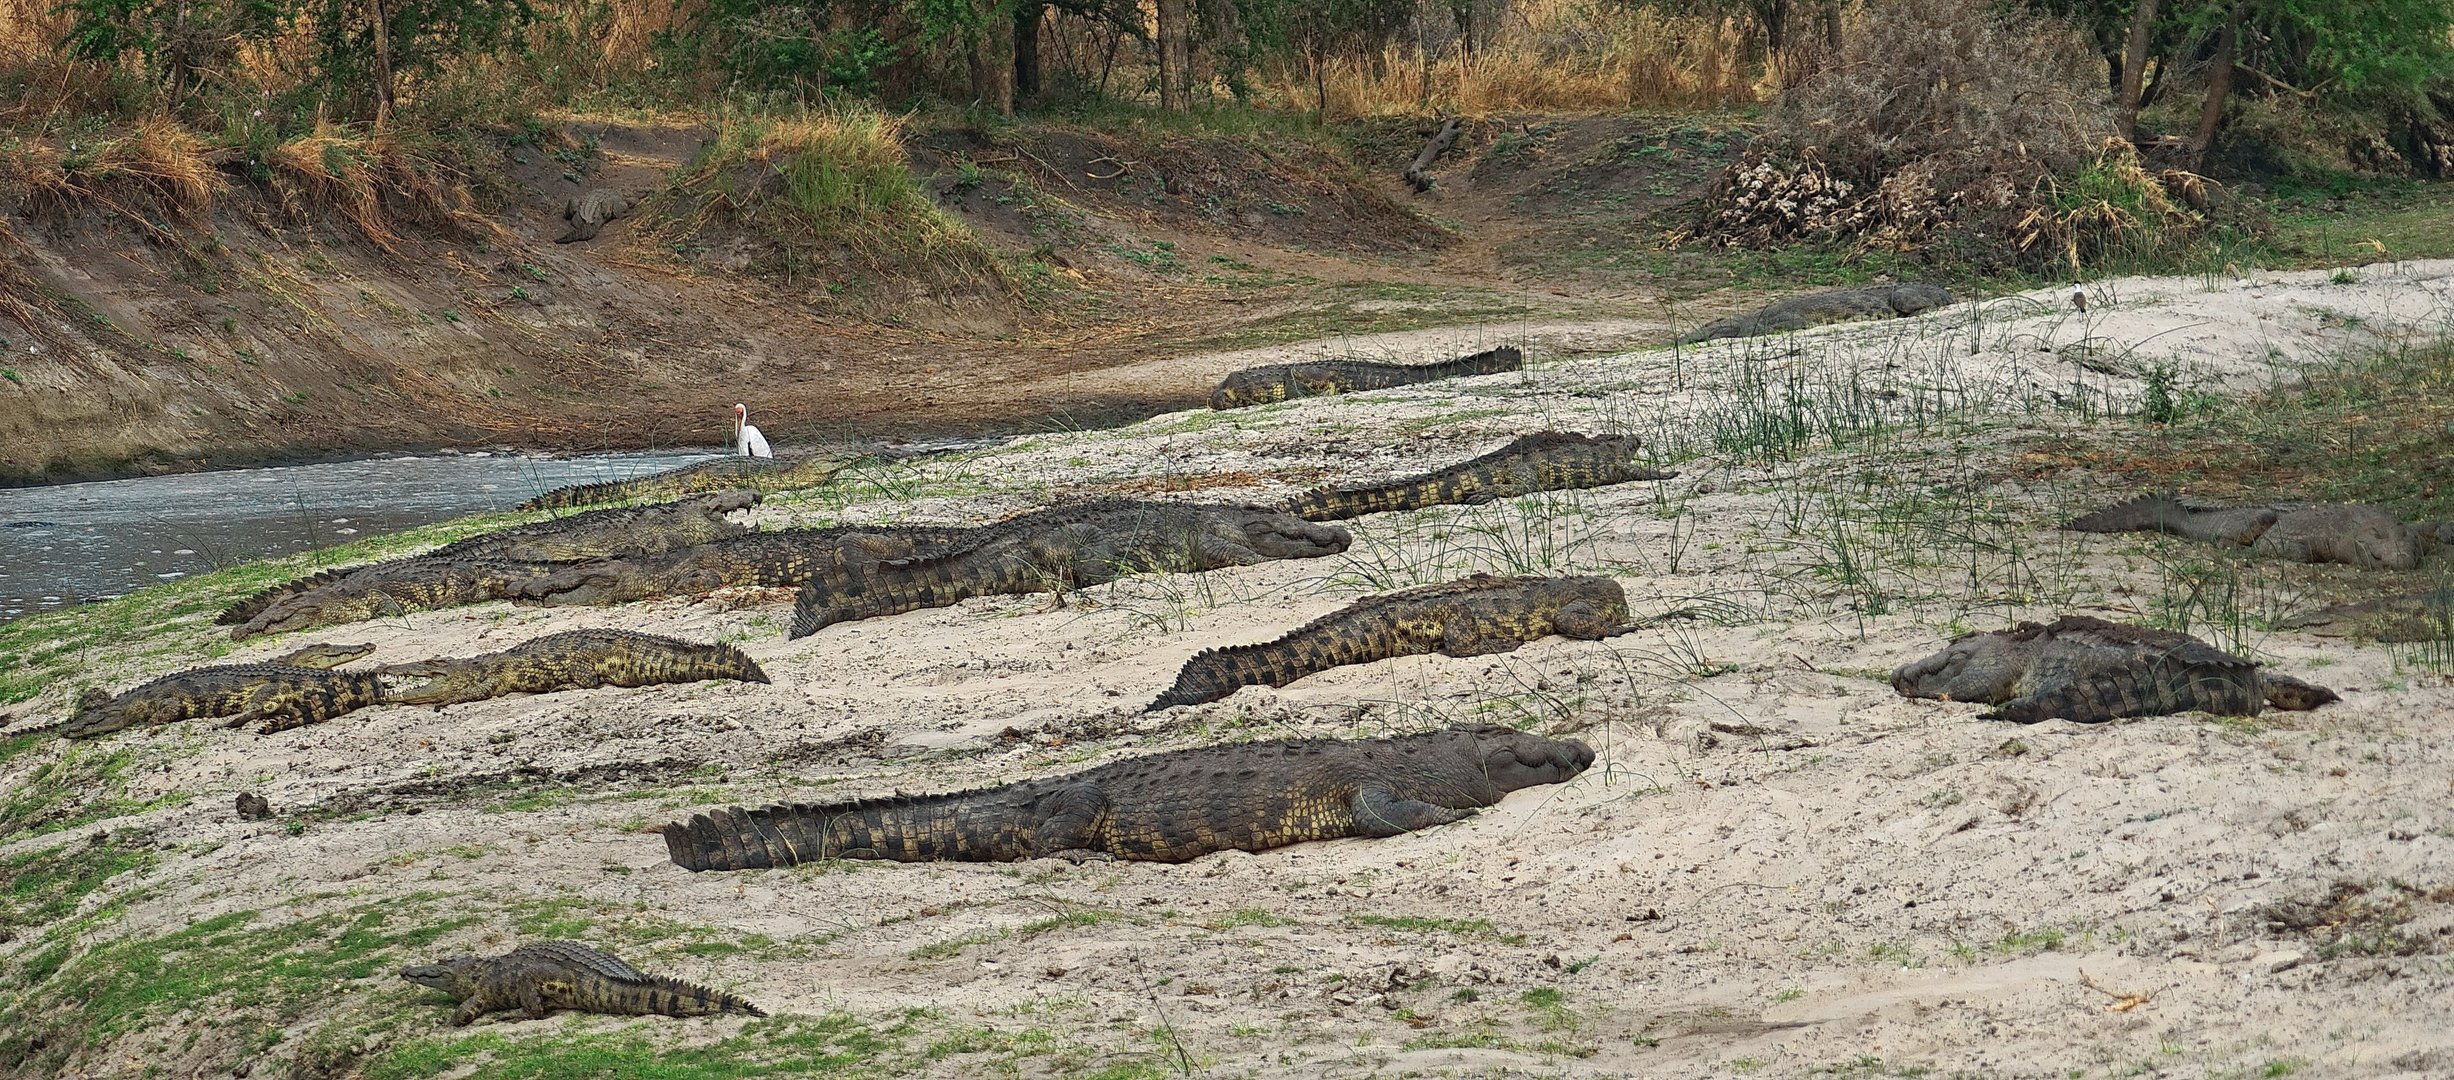 Krokodile in der Trockenzeit